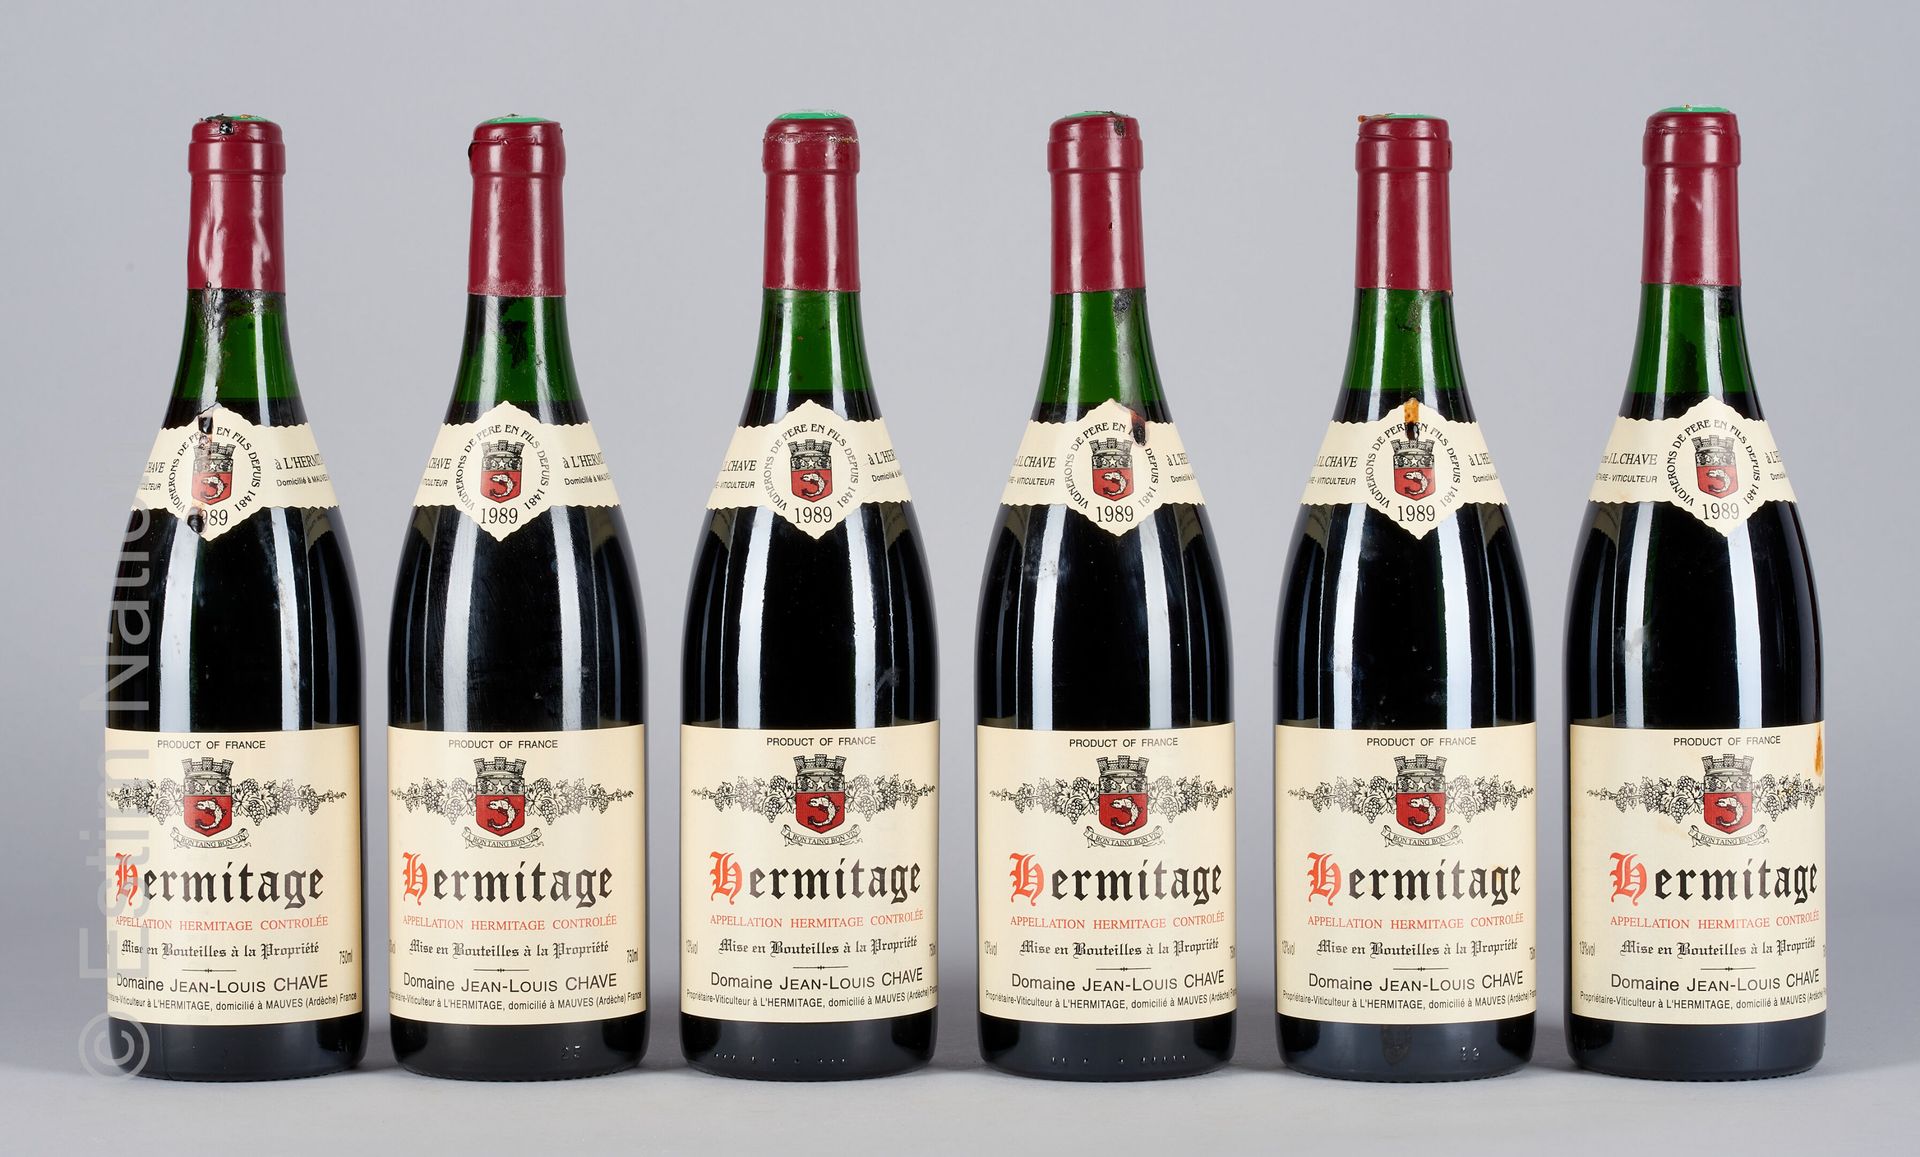 HERMITAGE ROUGE 6 bottles HERMITAGE 1989 Jean-Louis Chave

(N. Between 3 and 3.5&hellip;